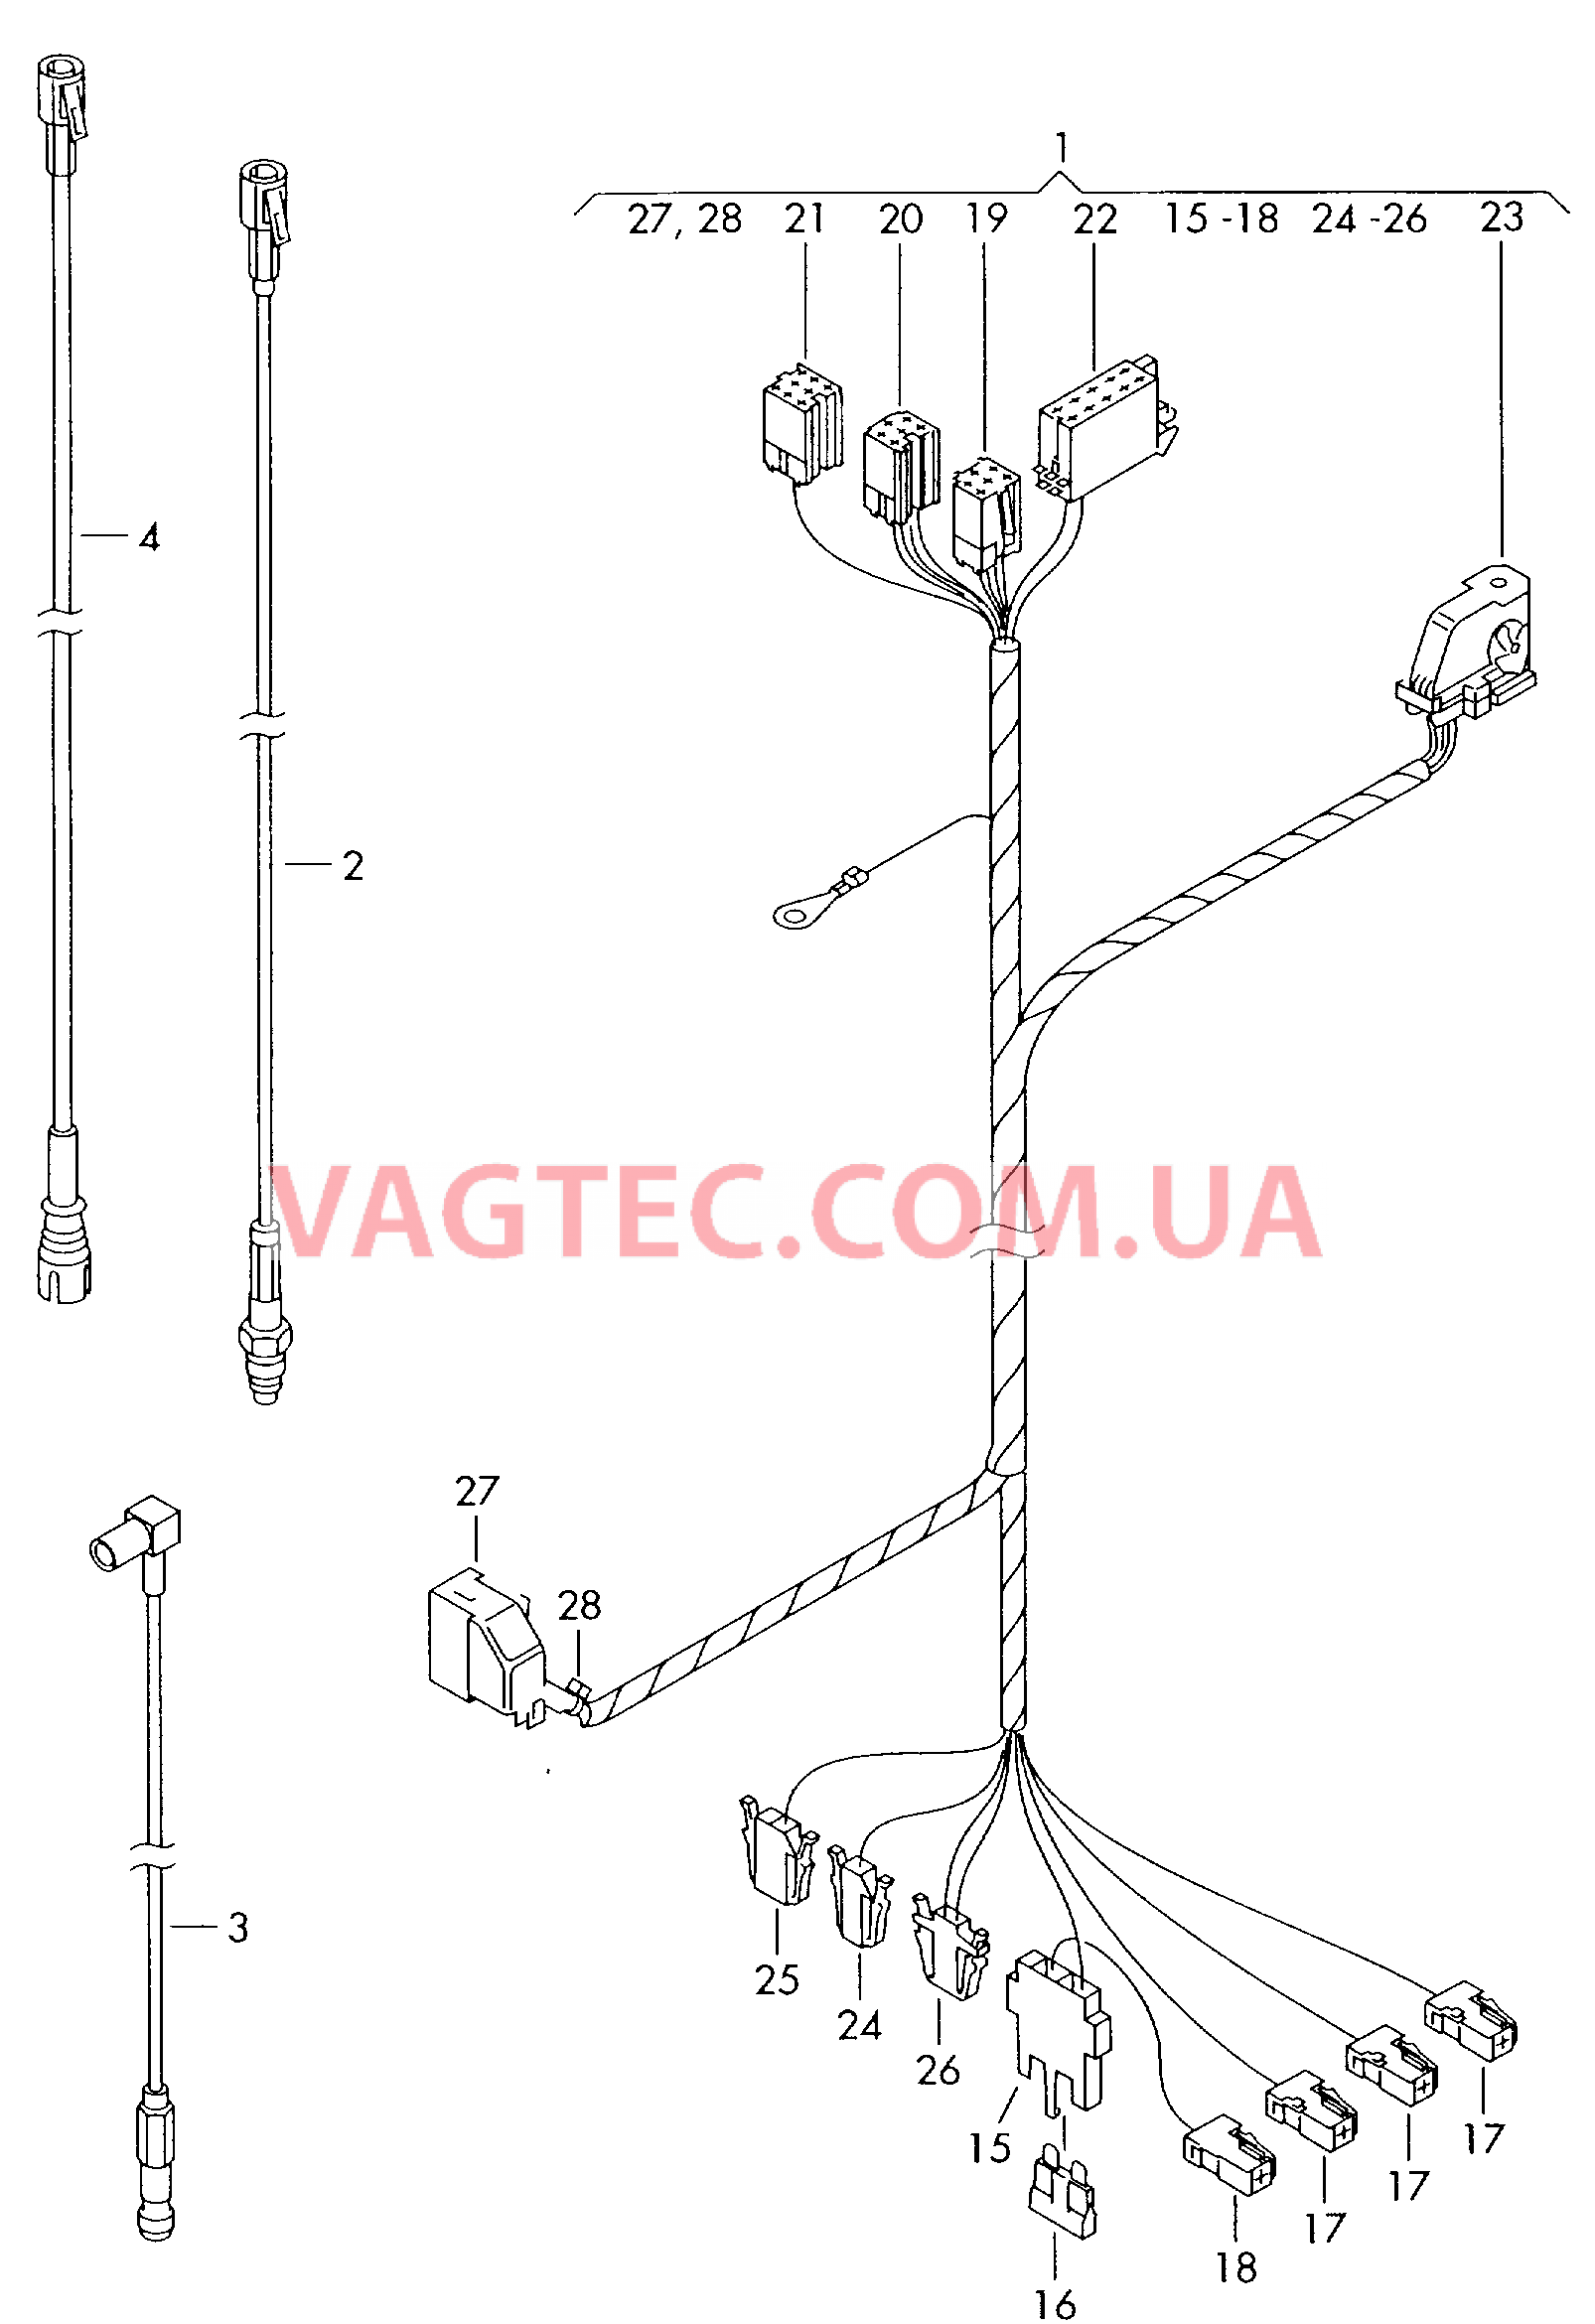 Жгут проводов системы навигации  Антенный кабель                   см. каталог:  для VOLKSWAGEN Transporter 2002